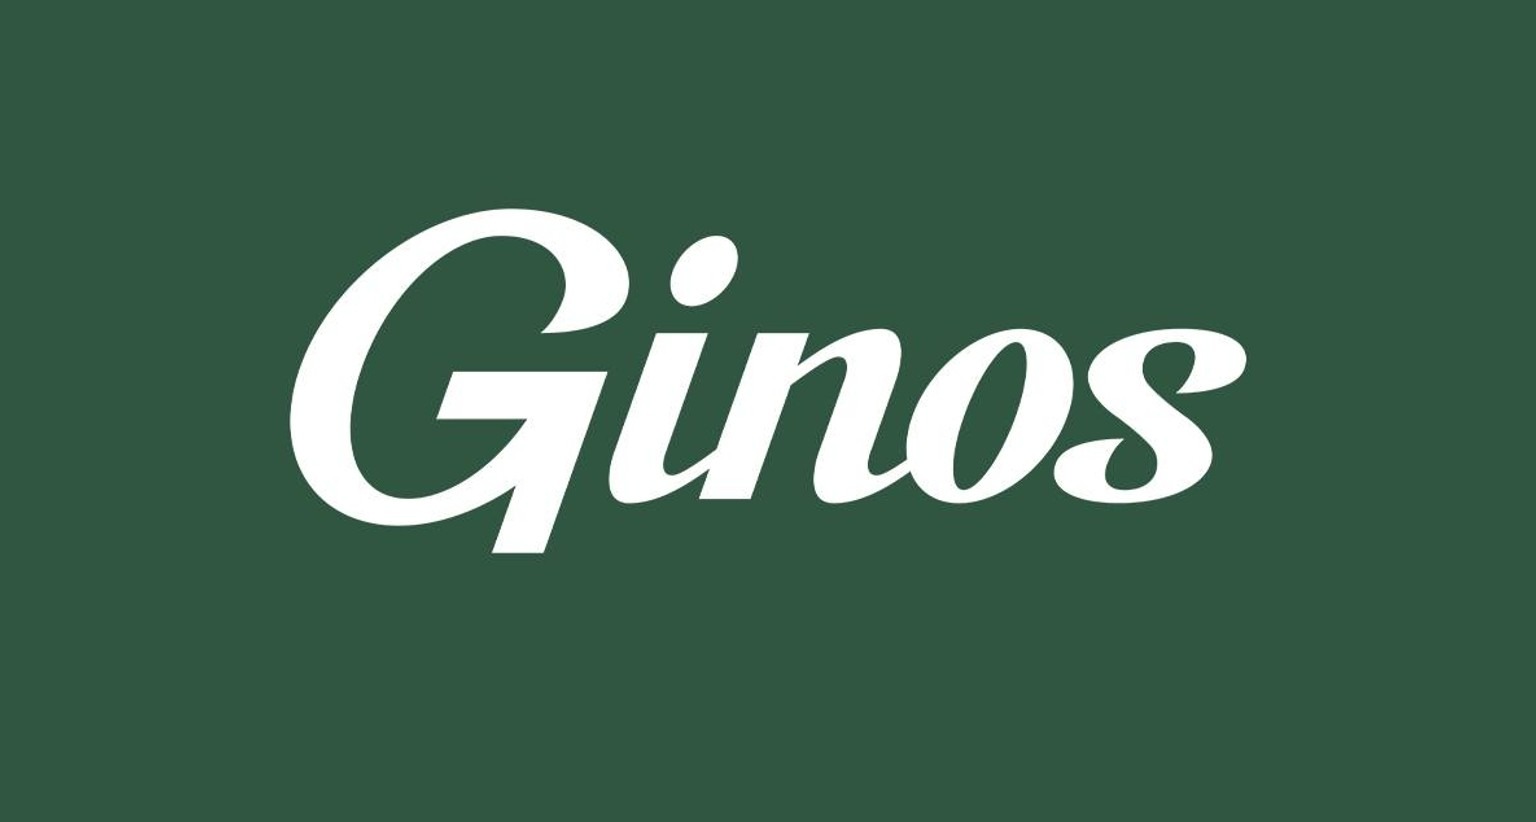 Ginos comunica su nueva identidad de marca y la elección de Ogilvy Madrid como agencia creativa para su reposicionamiento